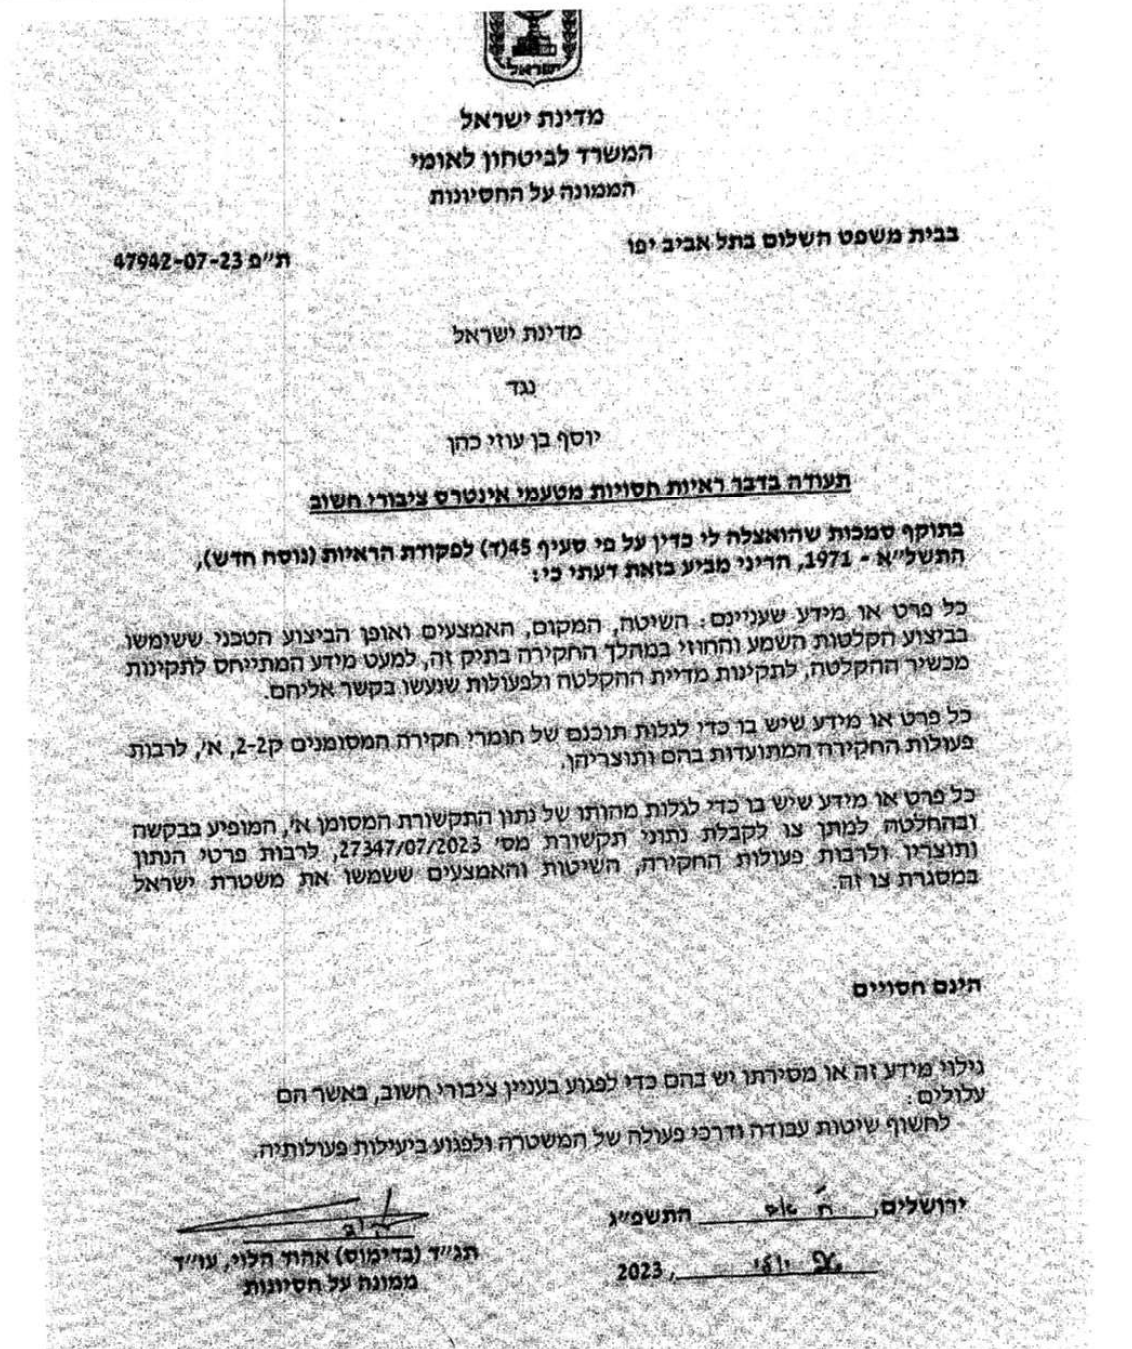 תעודת חיסיון שהוציא אהוד הלוי על פרסומים נגד הדס קליין שהיא נבלה 47942-07-23